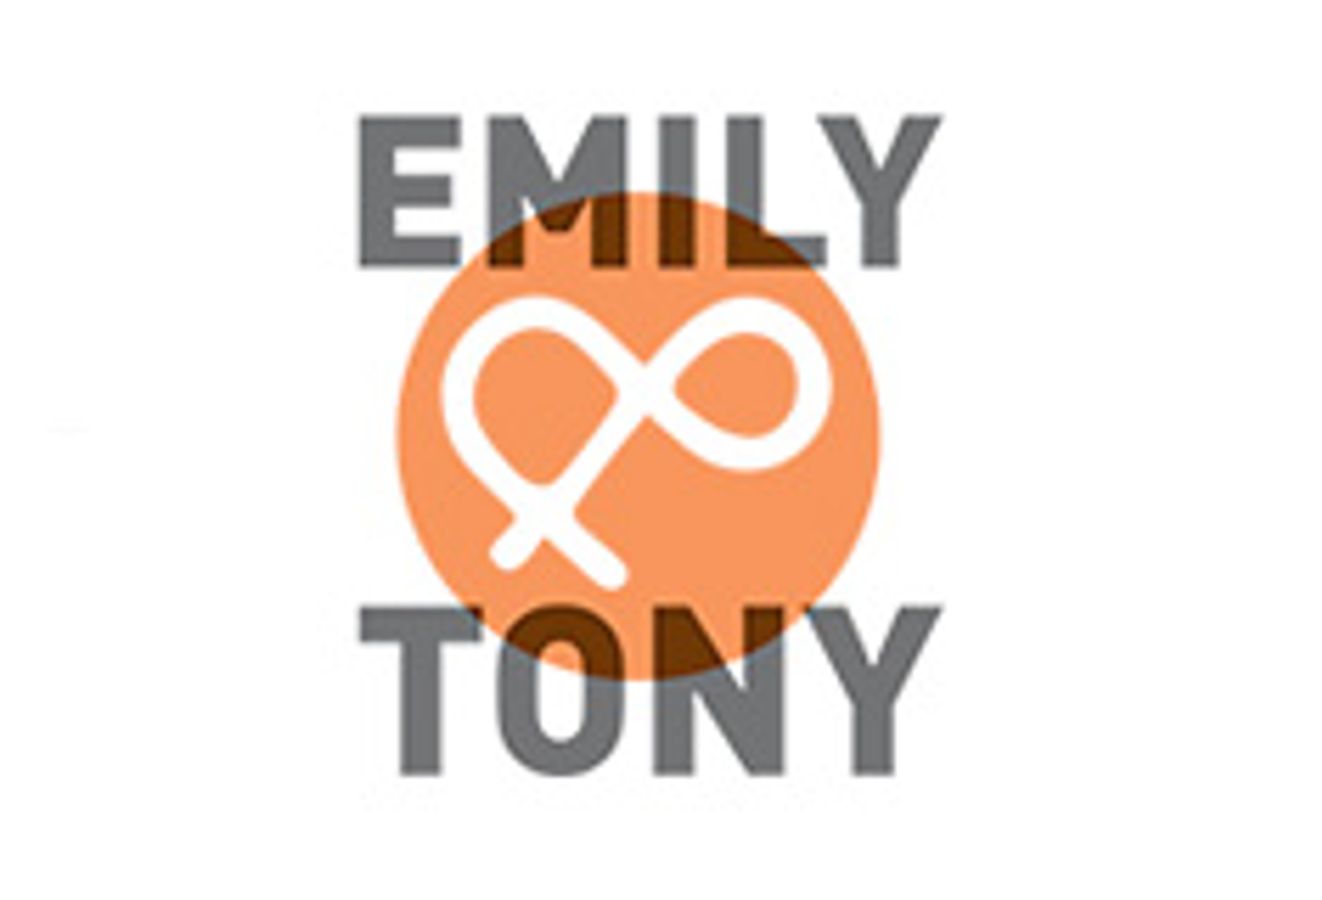 Emily & Tony